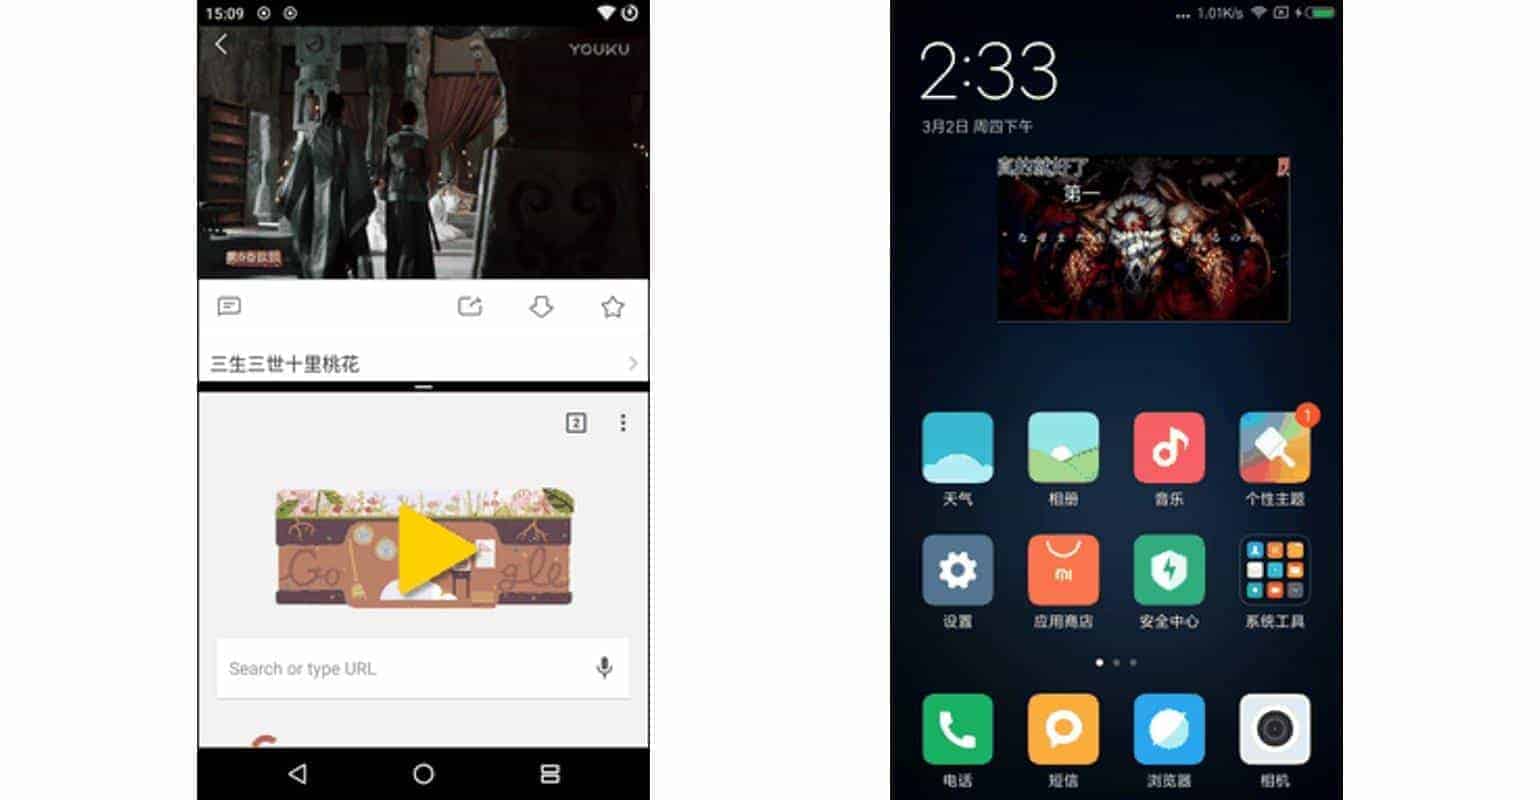 MIUI 9 features gelekt- split screen en picture-in-picture